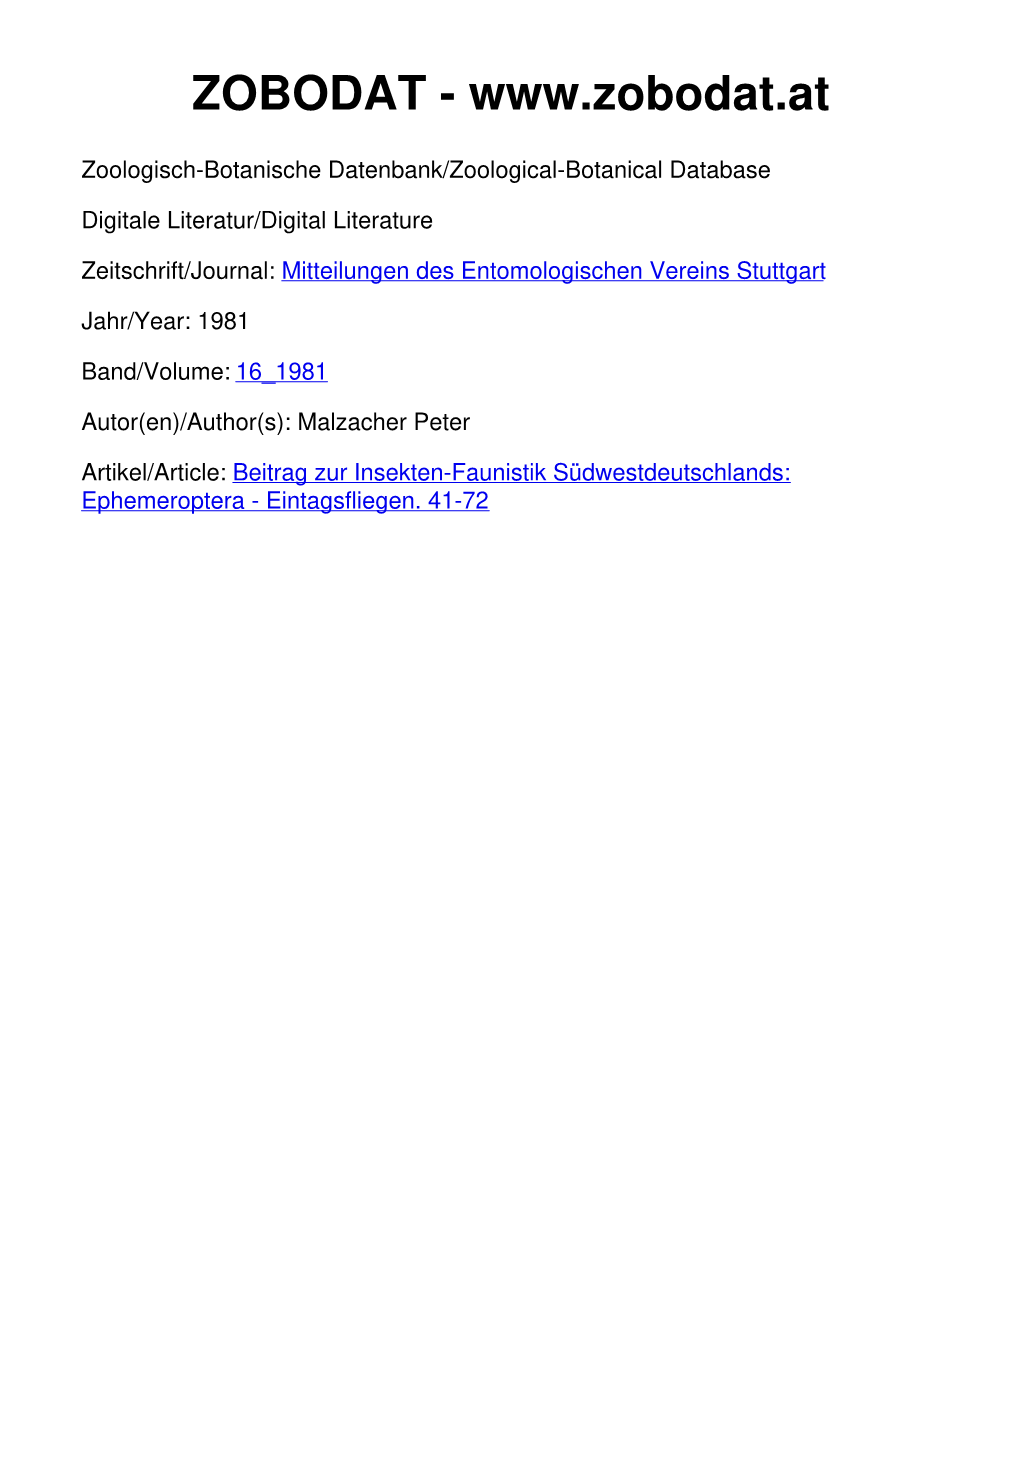 Mitteilungen Des Entomologischen Vereins Stuttgart